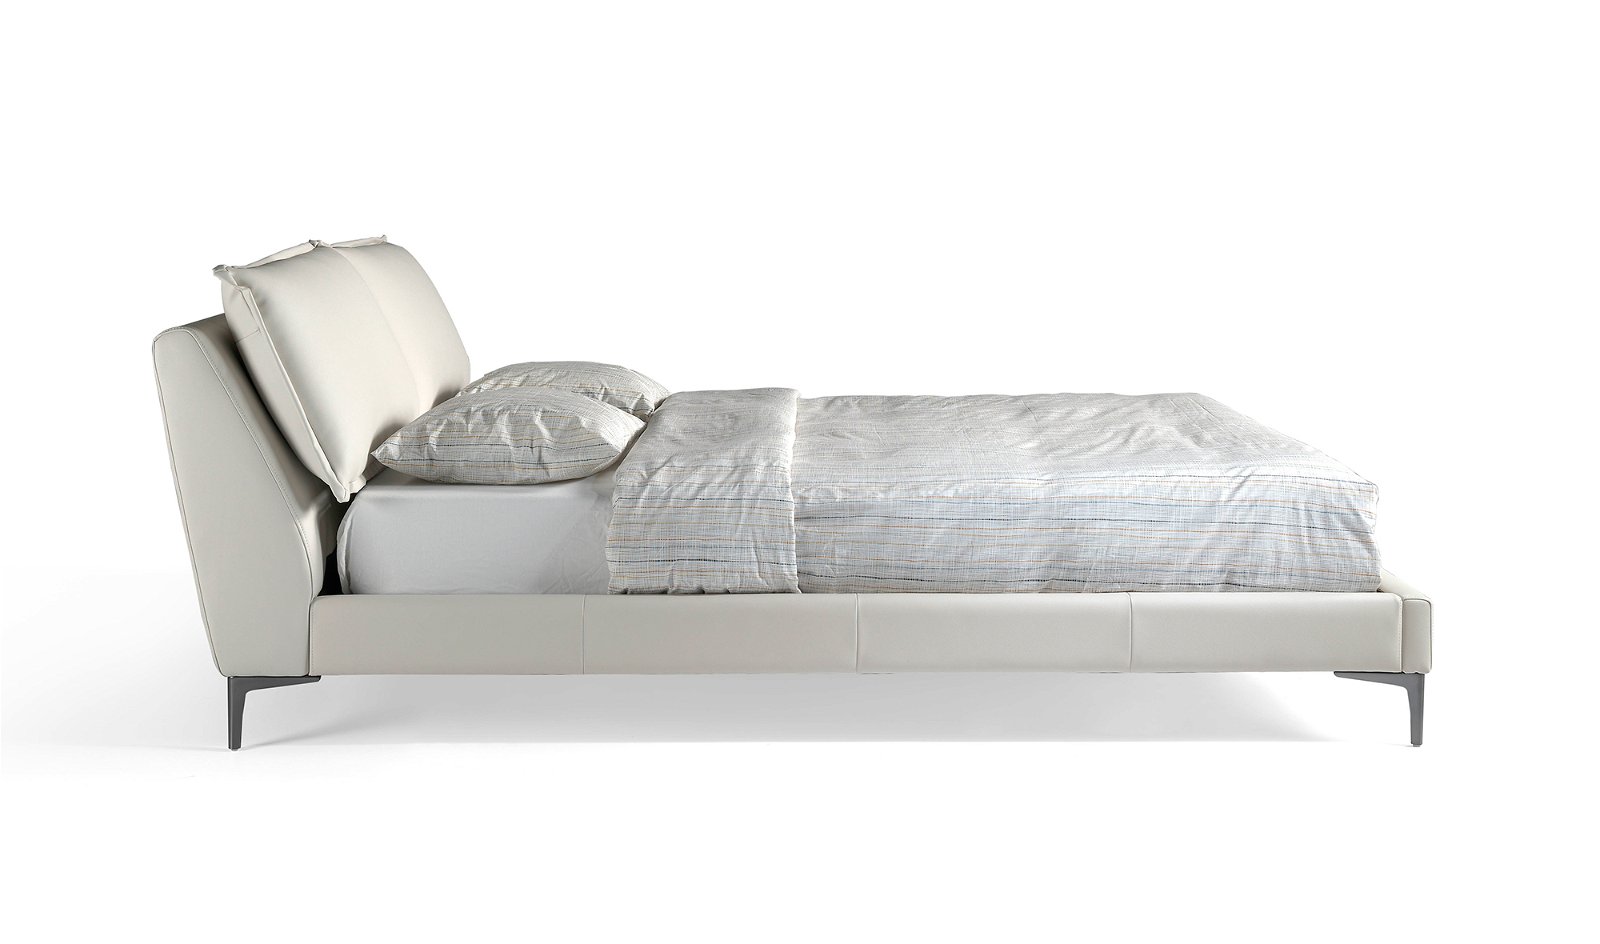 Cama moderna elevable tapizada Rinaldi para colchón 160x200